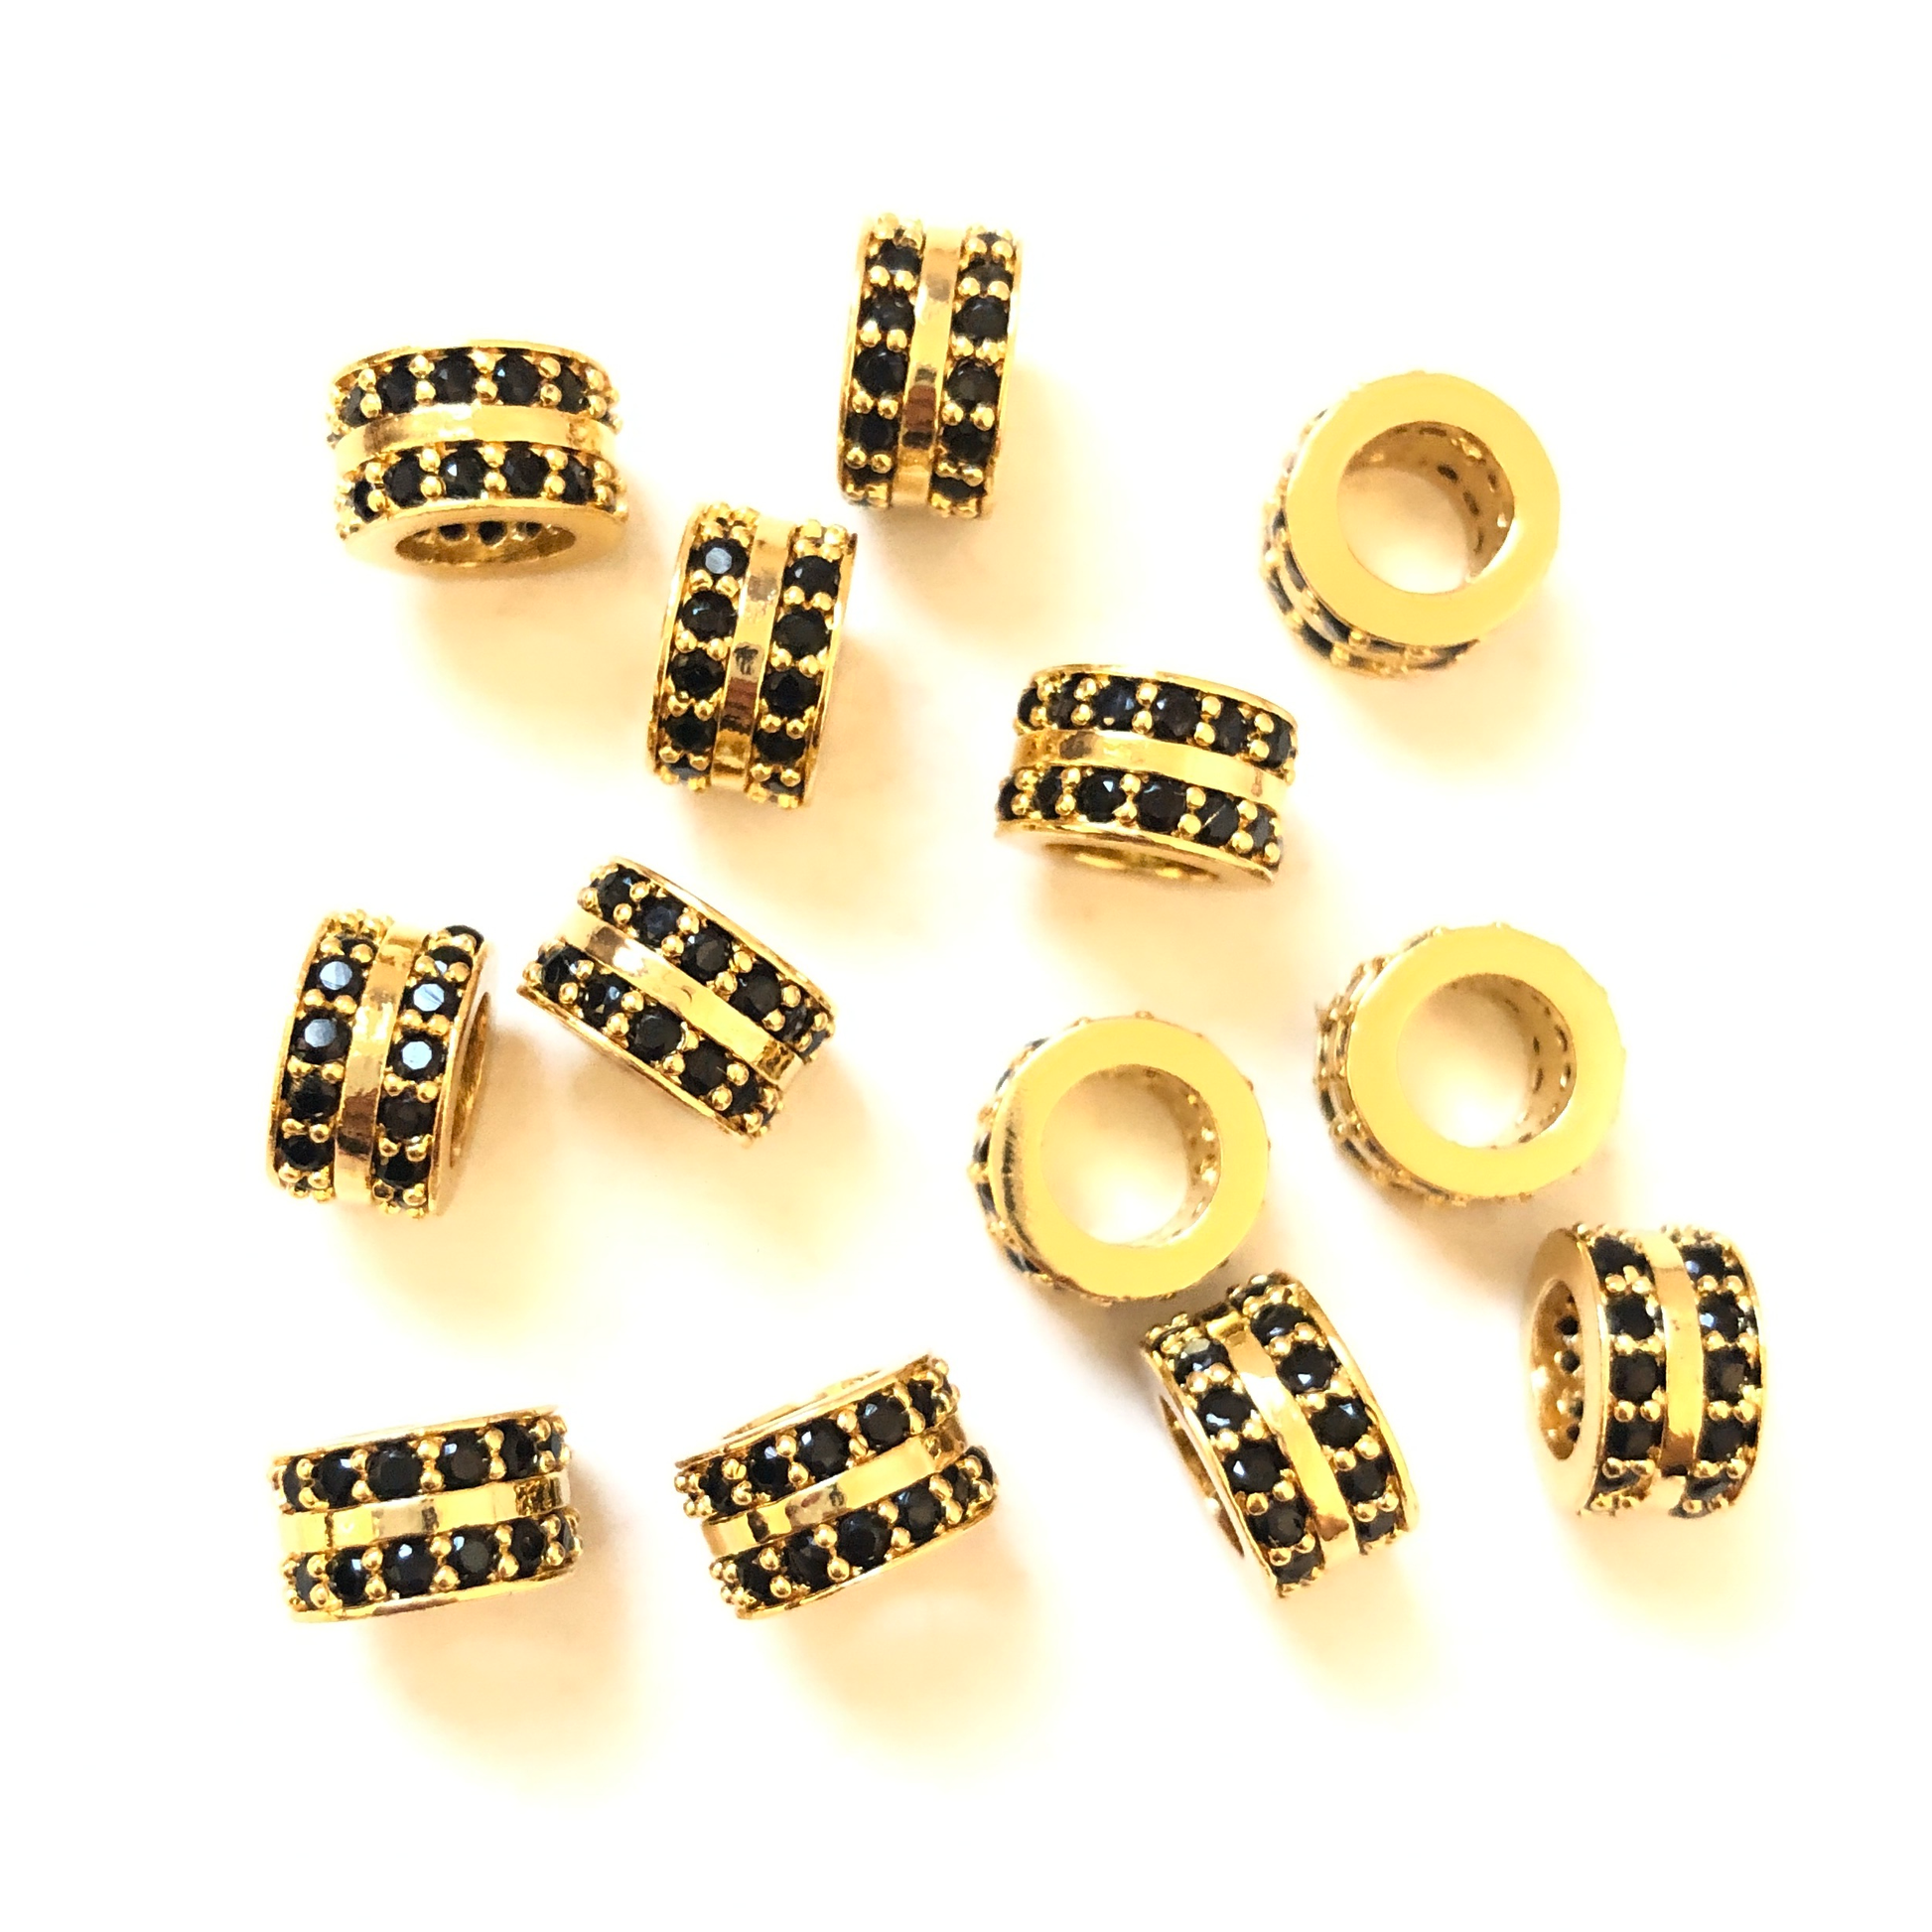 20pcs/lot 8.5*5.2mm Black CZ Paved Wheel Rondelle Spacers Gold CZ Paved Spacers Rondelle Beads Charms Beads Beyond